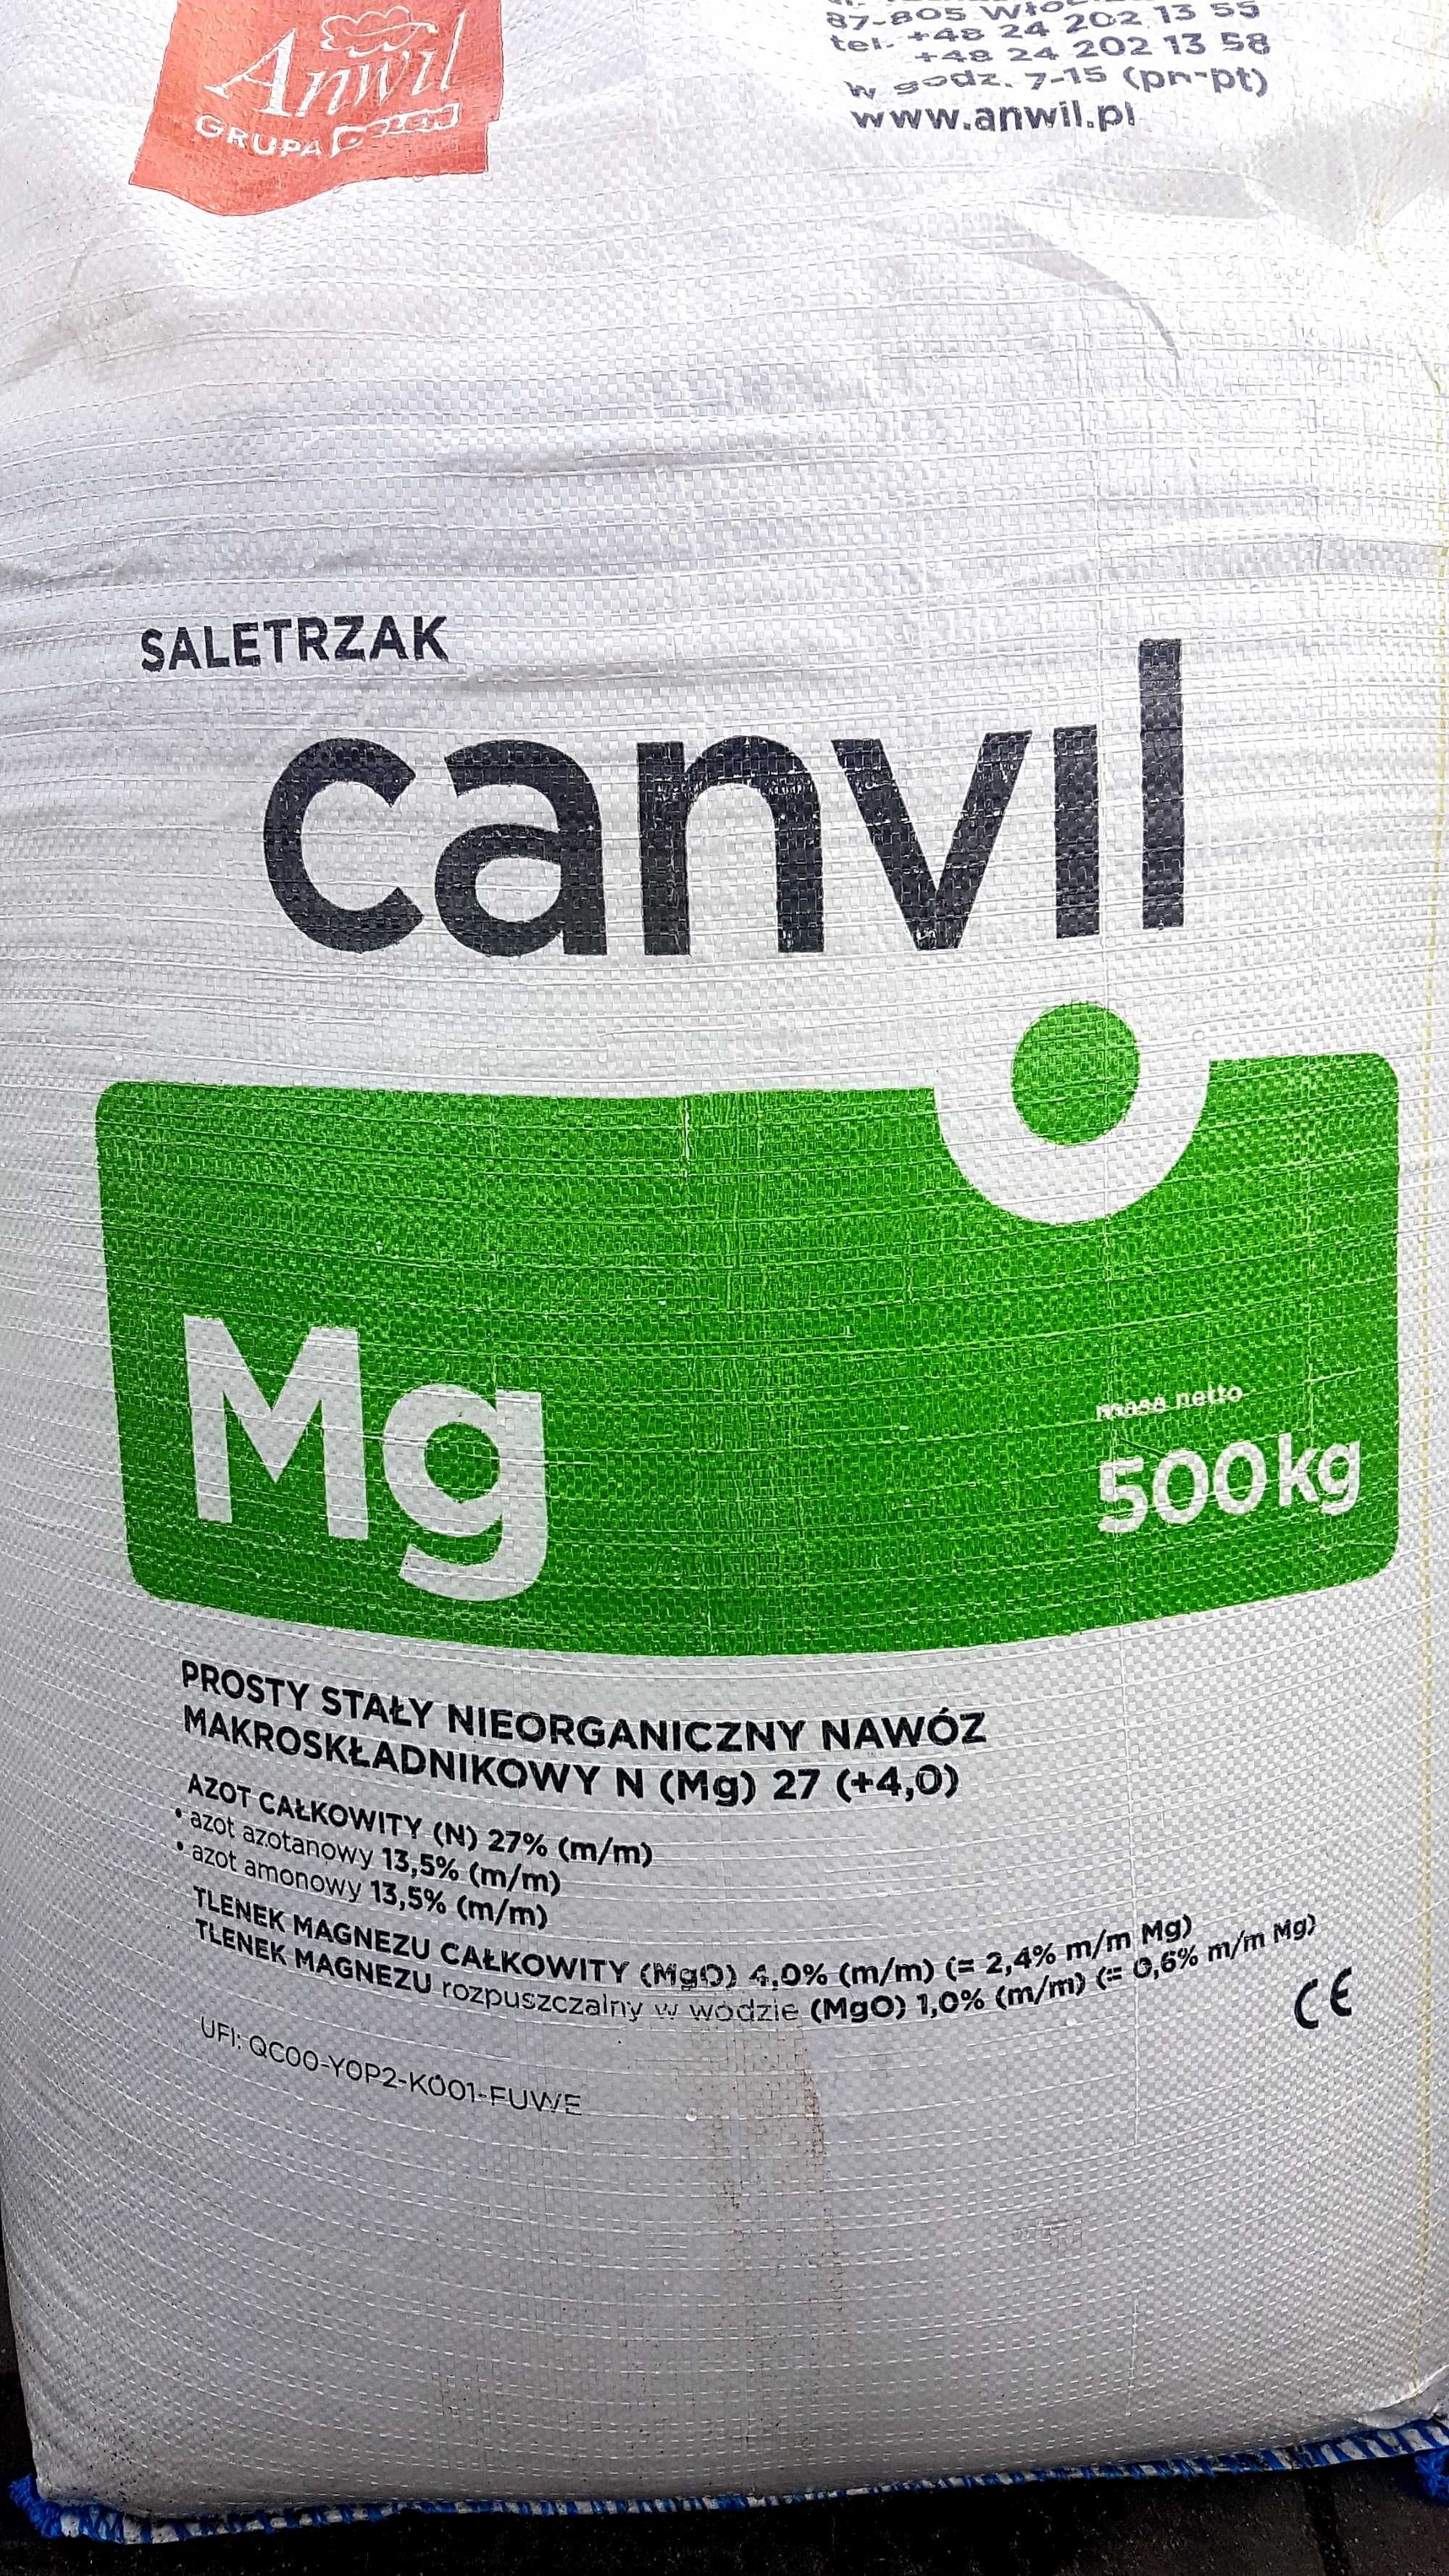 Saletrzak Canvil 27N nawóz azotowy z magnezem